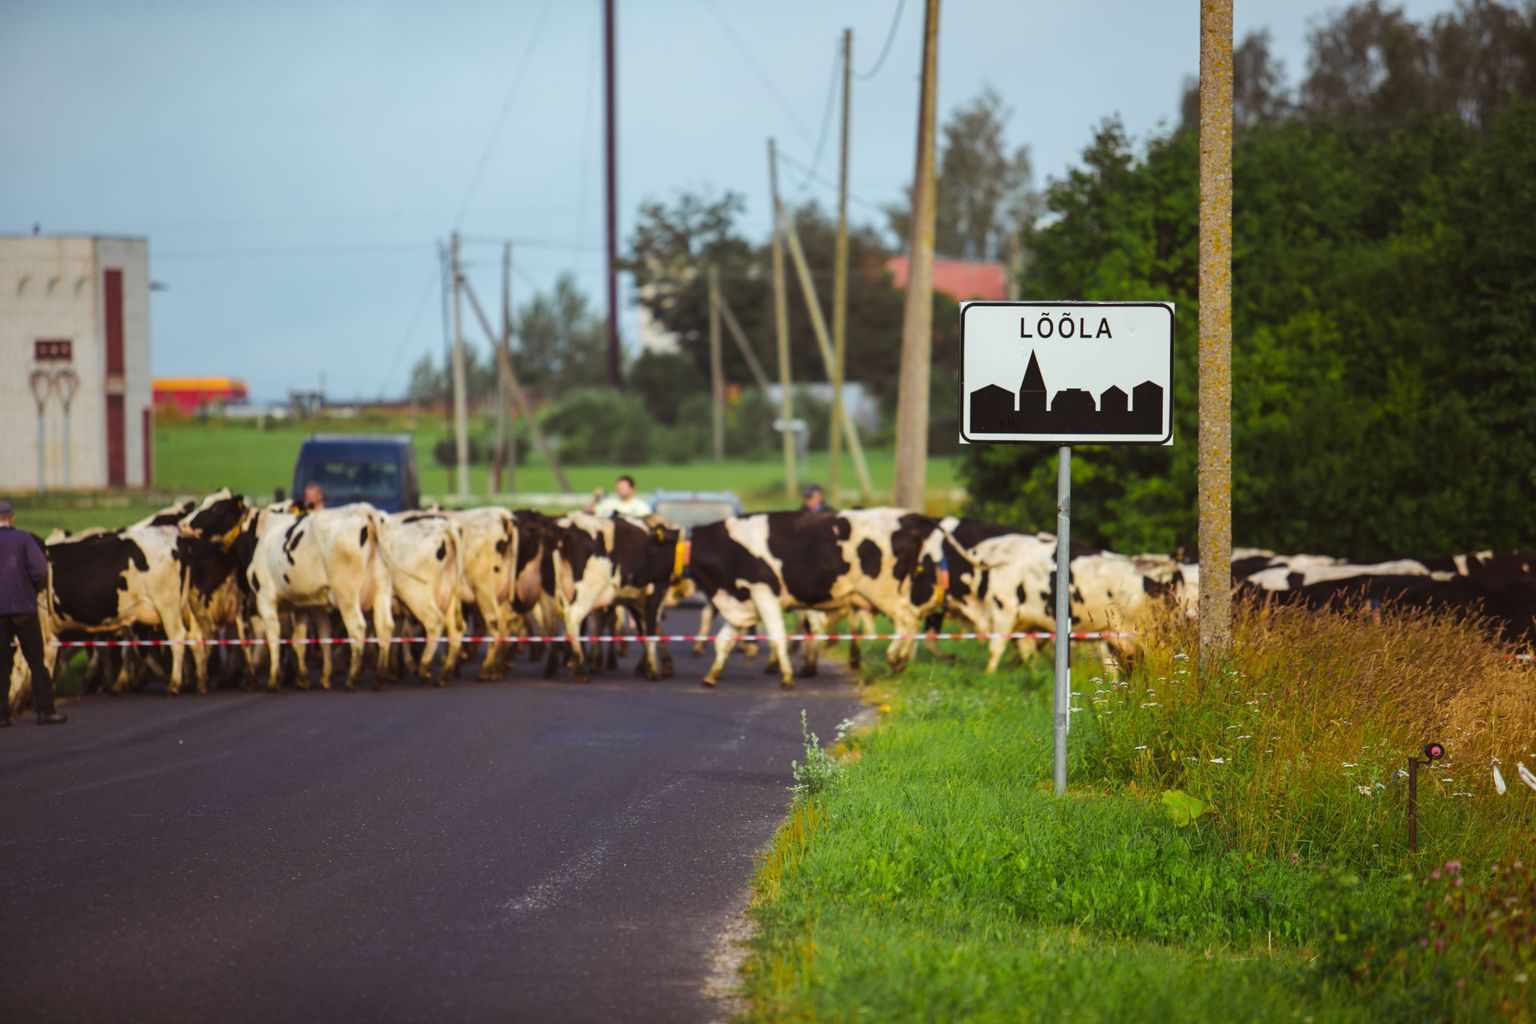 Väätsa Agro lehmade kolimine uude suurfarmi.
DMITRI KOTJUH, JÄRVA TEATAJA/SCANPIX